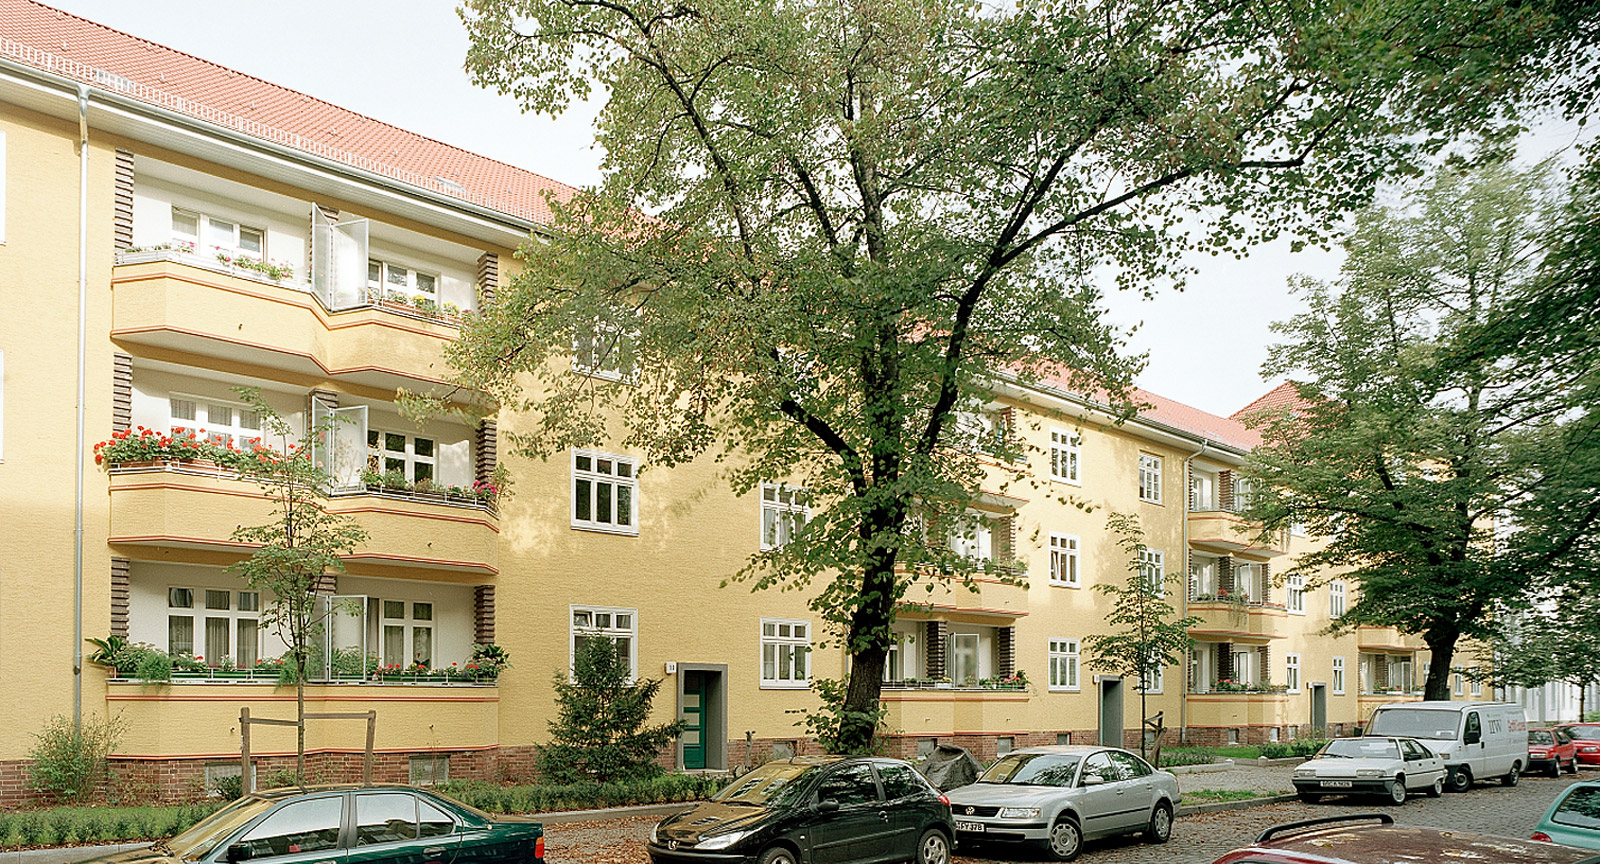 Wohnhäuser Altheider Straße 11, Berlin-Oberschöneweide